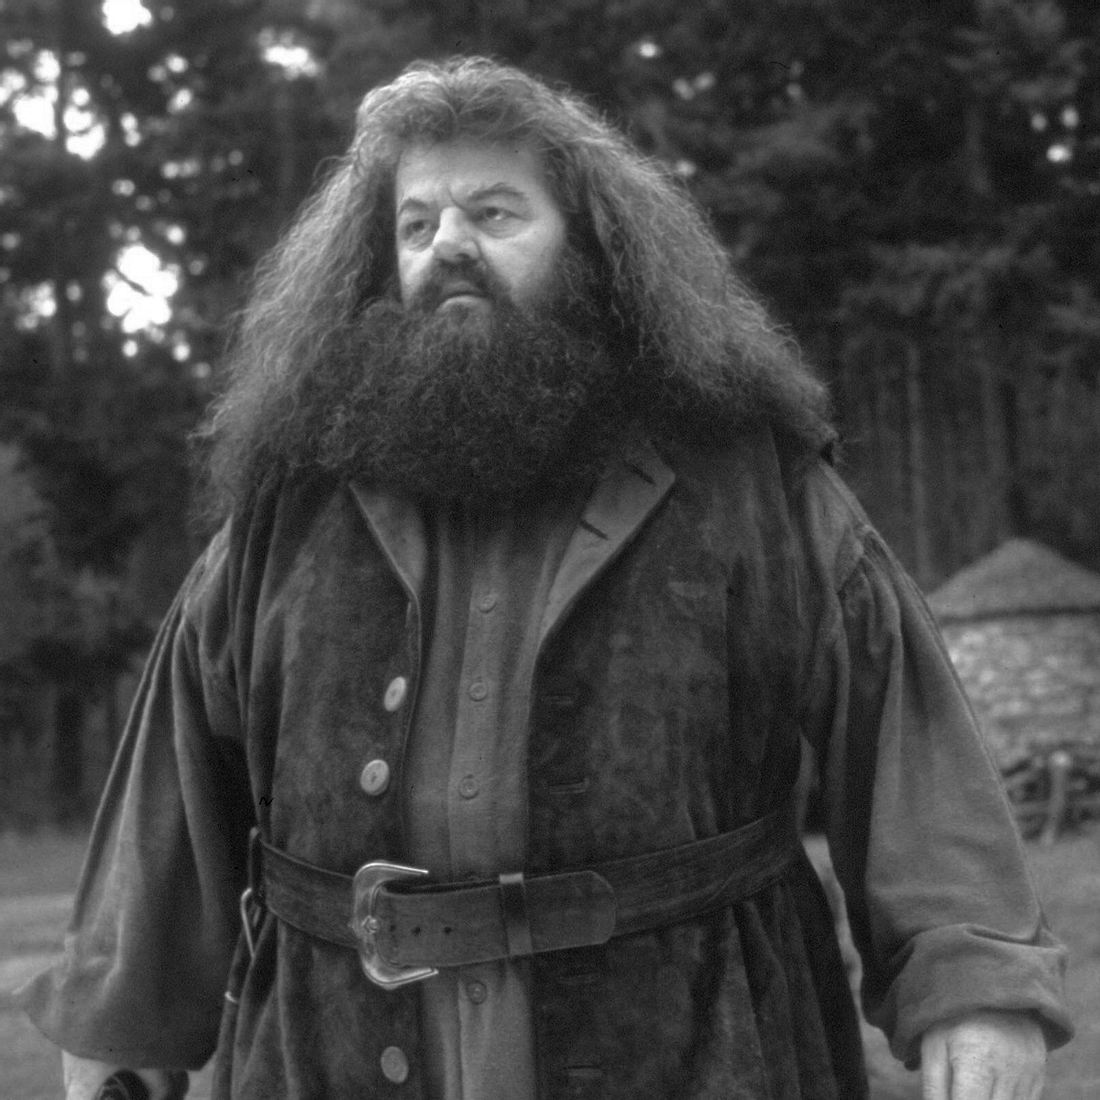 Harry Potter-Star verstorben: Robbie Coltrane (Rubeus Hagrid) stirbt mit 72 Jahren